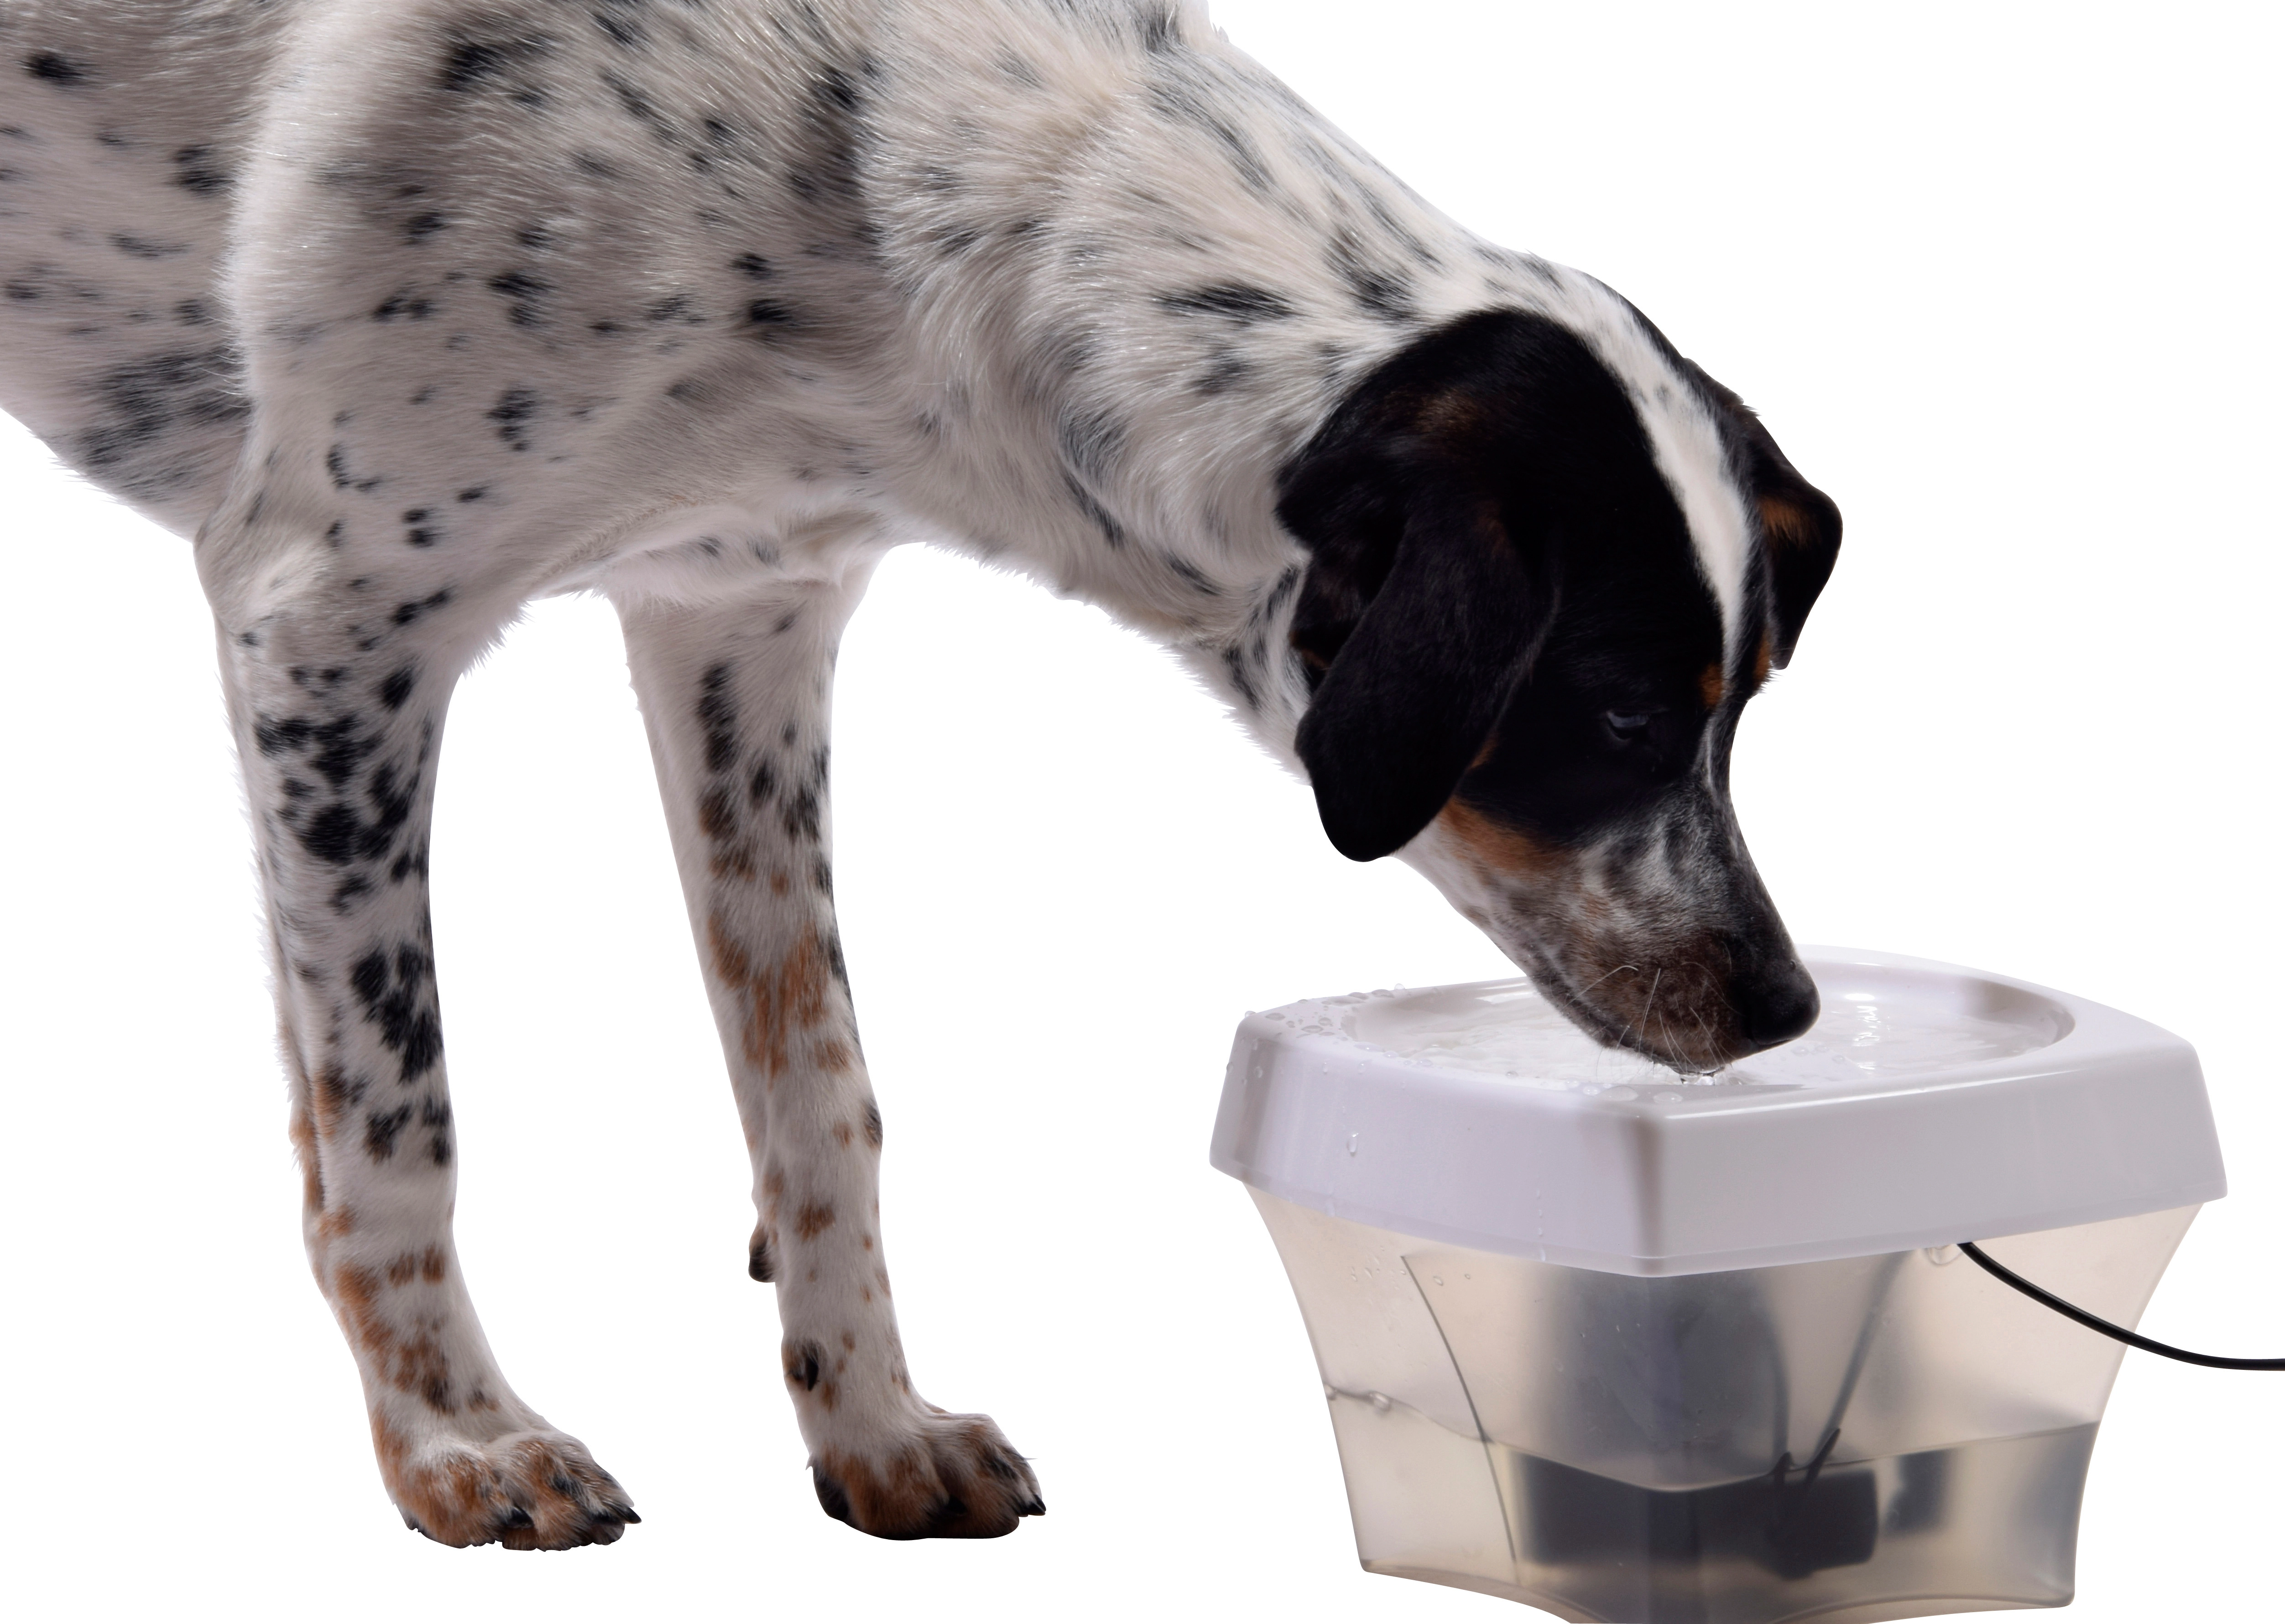 Automatischer Trinkbrunnen für Hunde und Katzen kaufen bei OBI